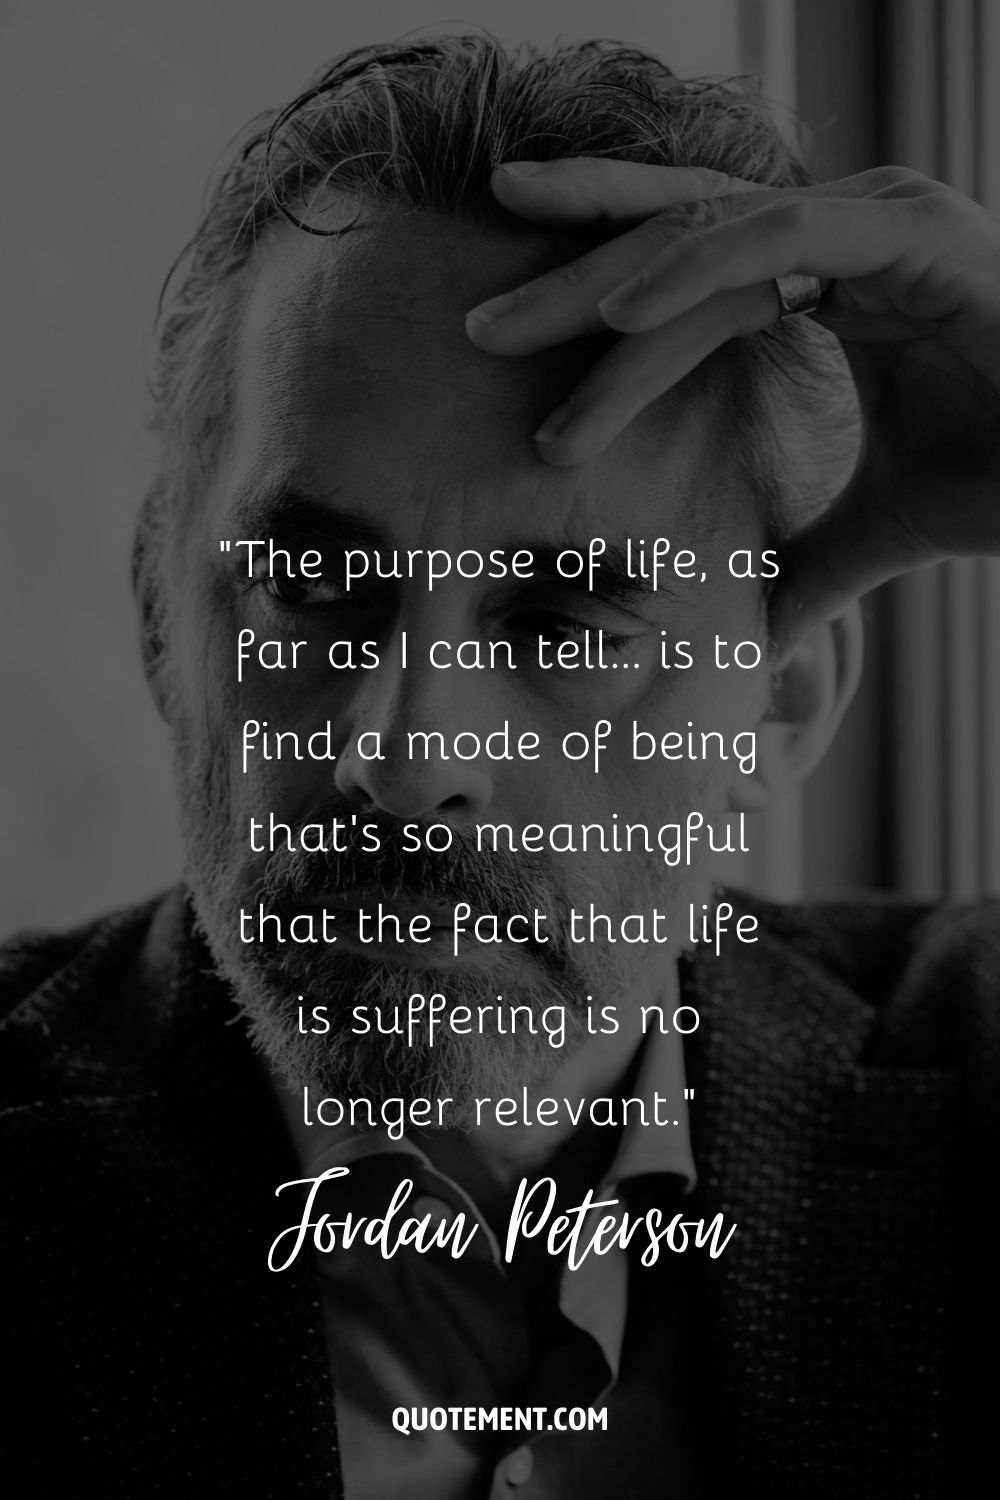 El propósito de la vida, por lo que puedo decir... es encontrar un modo de ser que sea tan significativo que el hecho de que la vida sea sufrimiento ya no sea relevante...